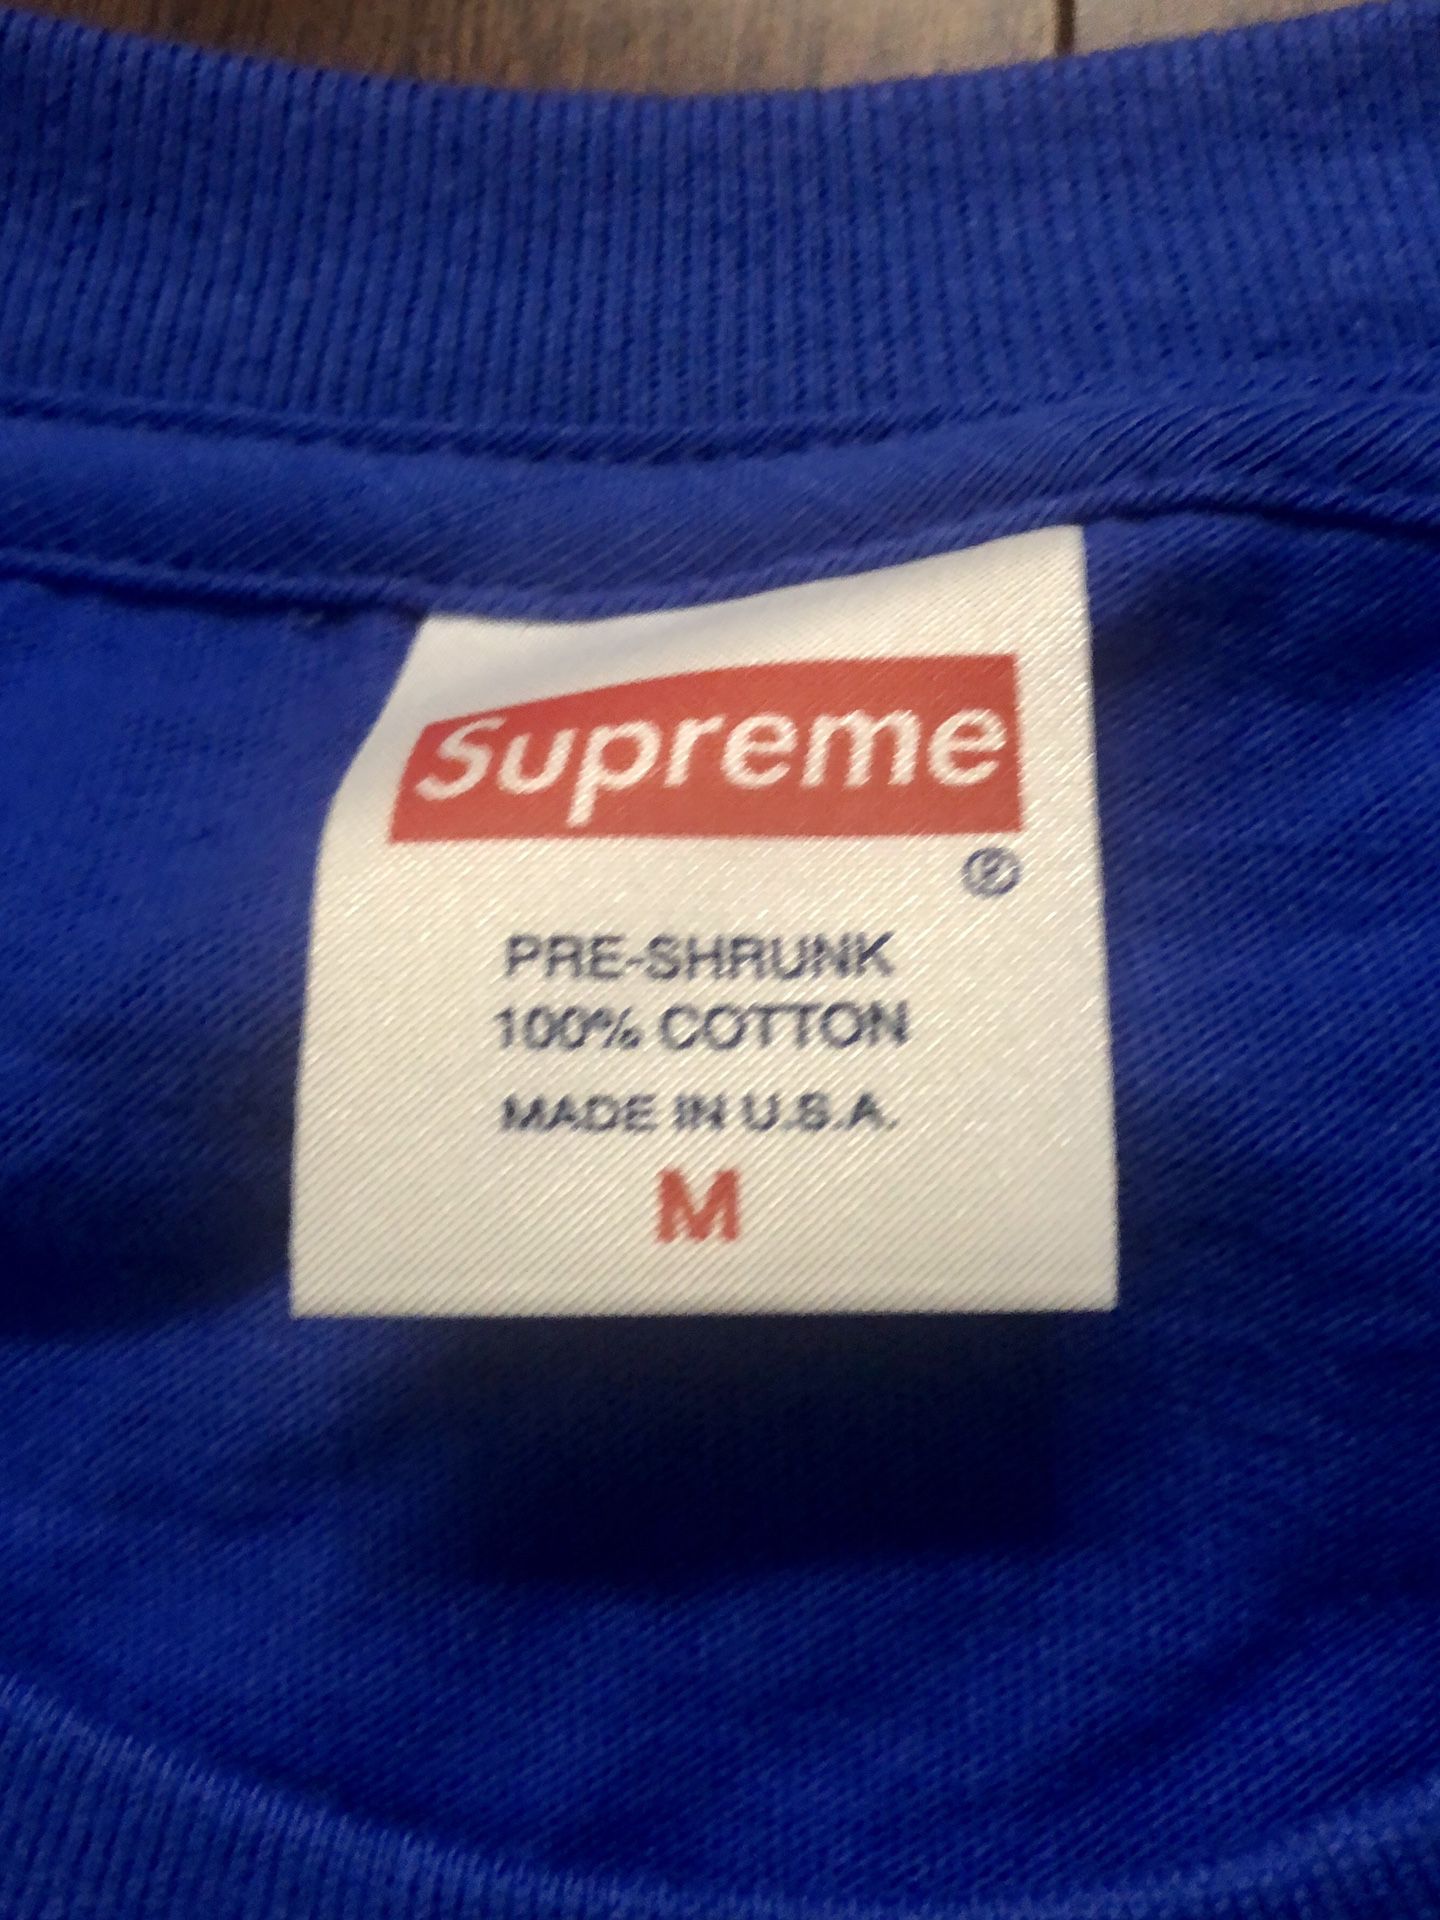 Supreme shirt size M